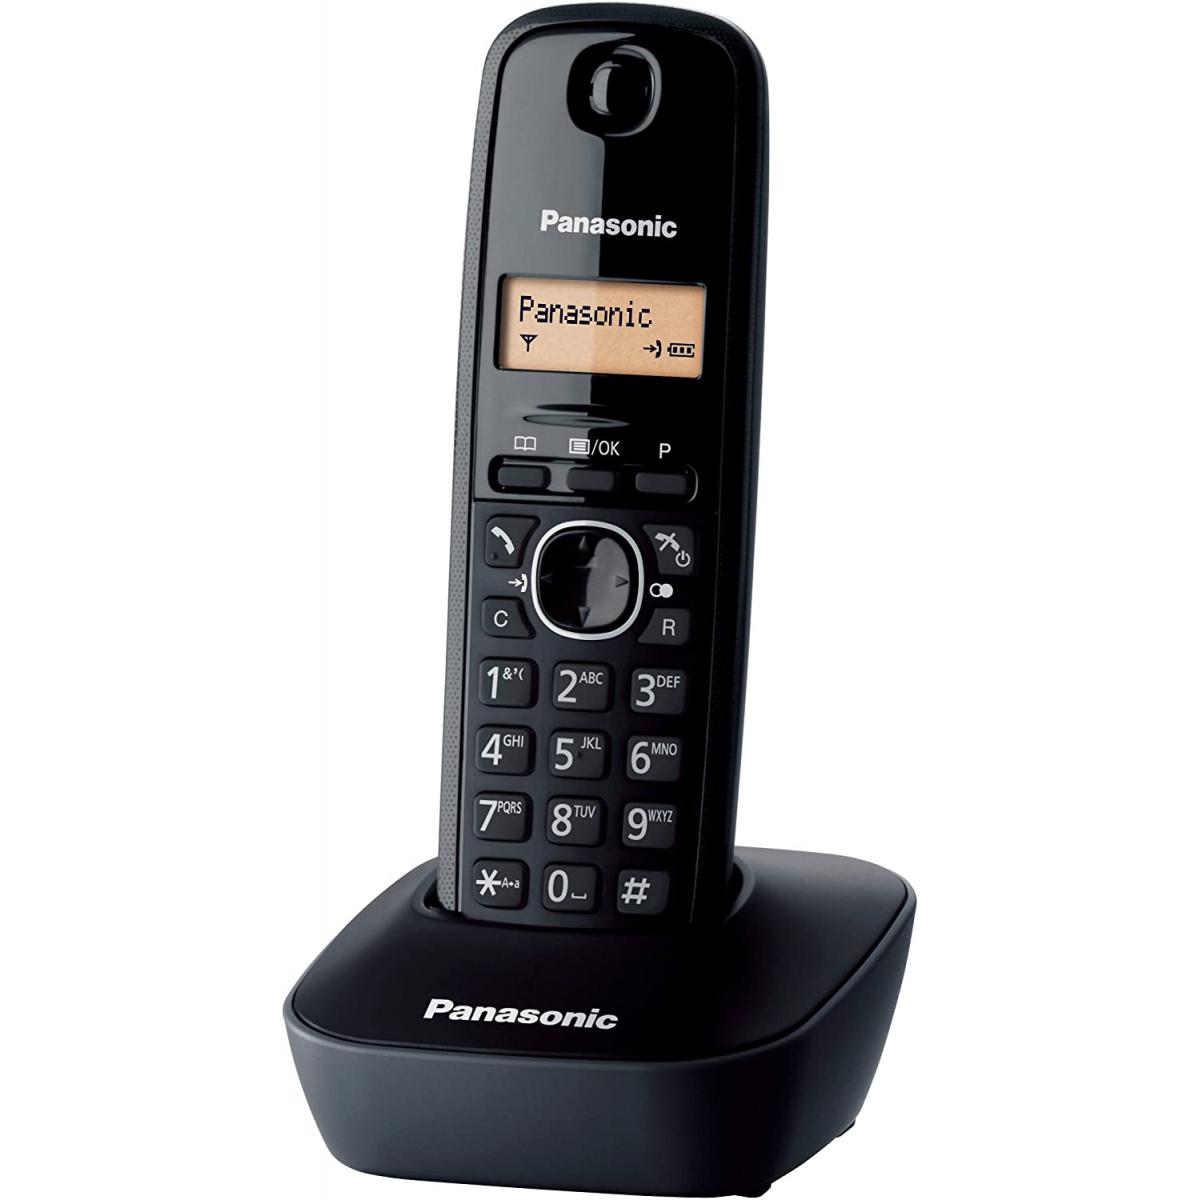 Panasonic - Rasage Electrique - telephone solo sans fil DECT sans répondeur noir - Téléphone fixe filaire